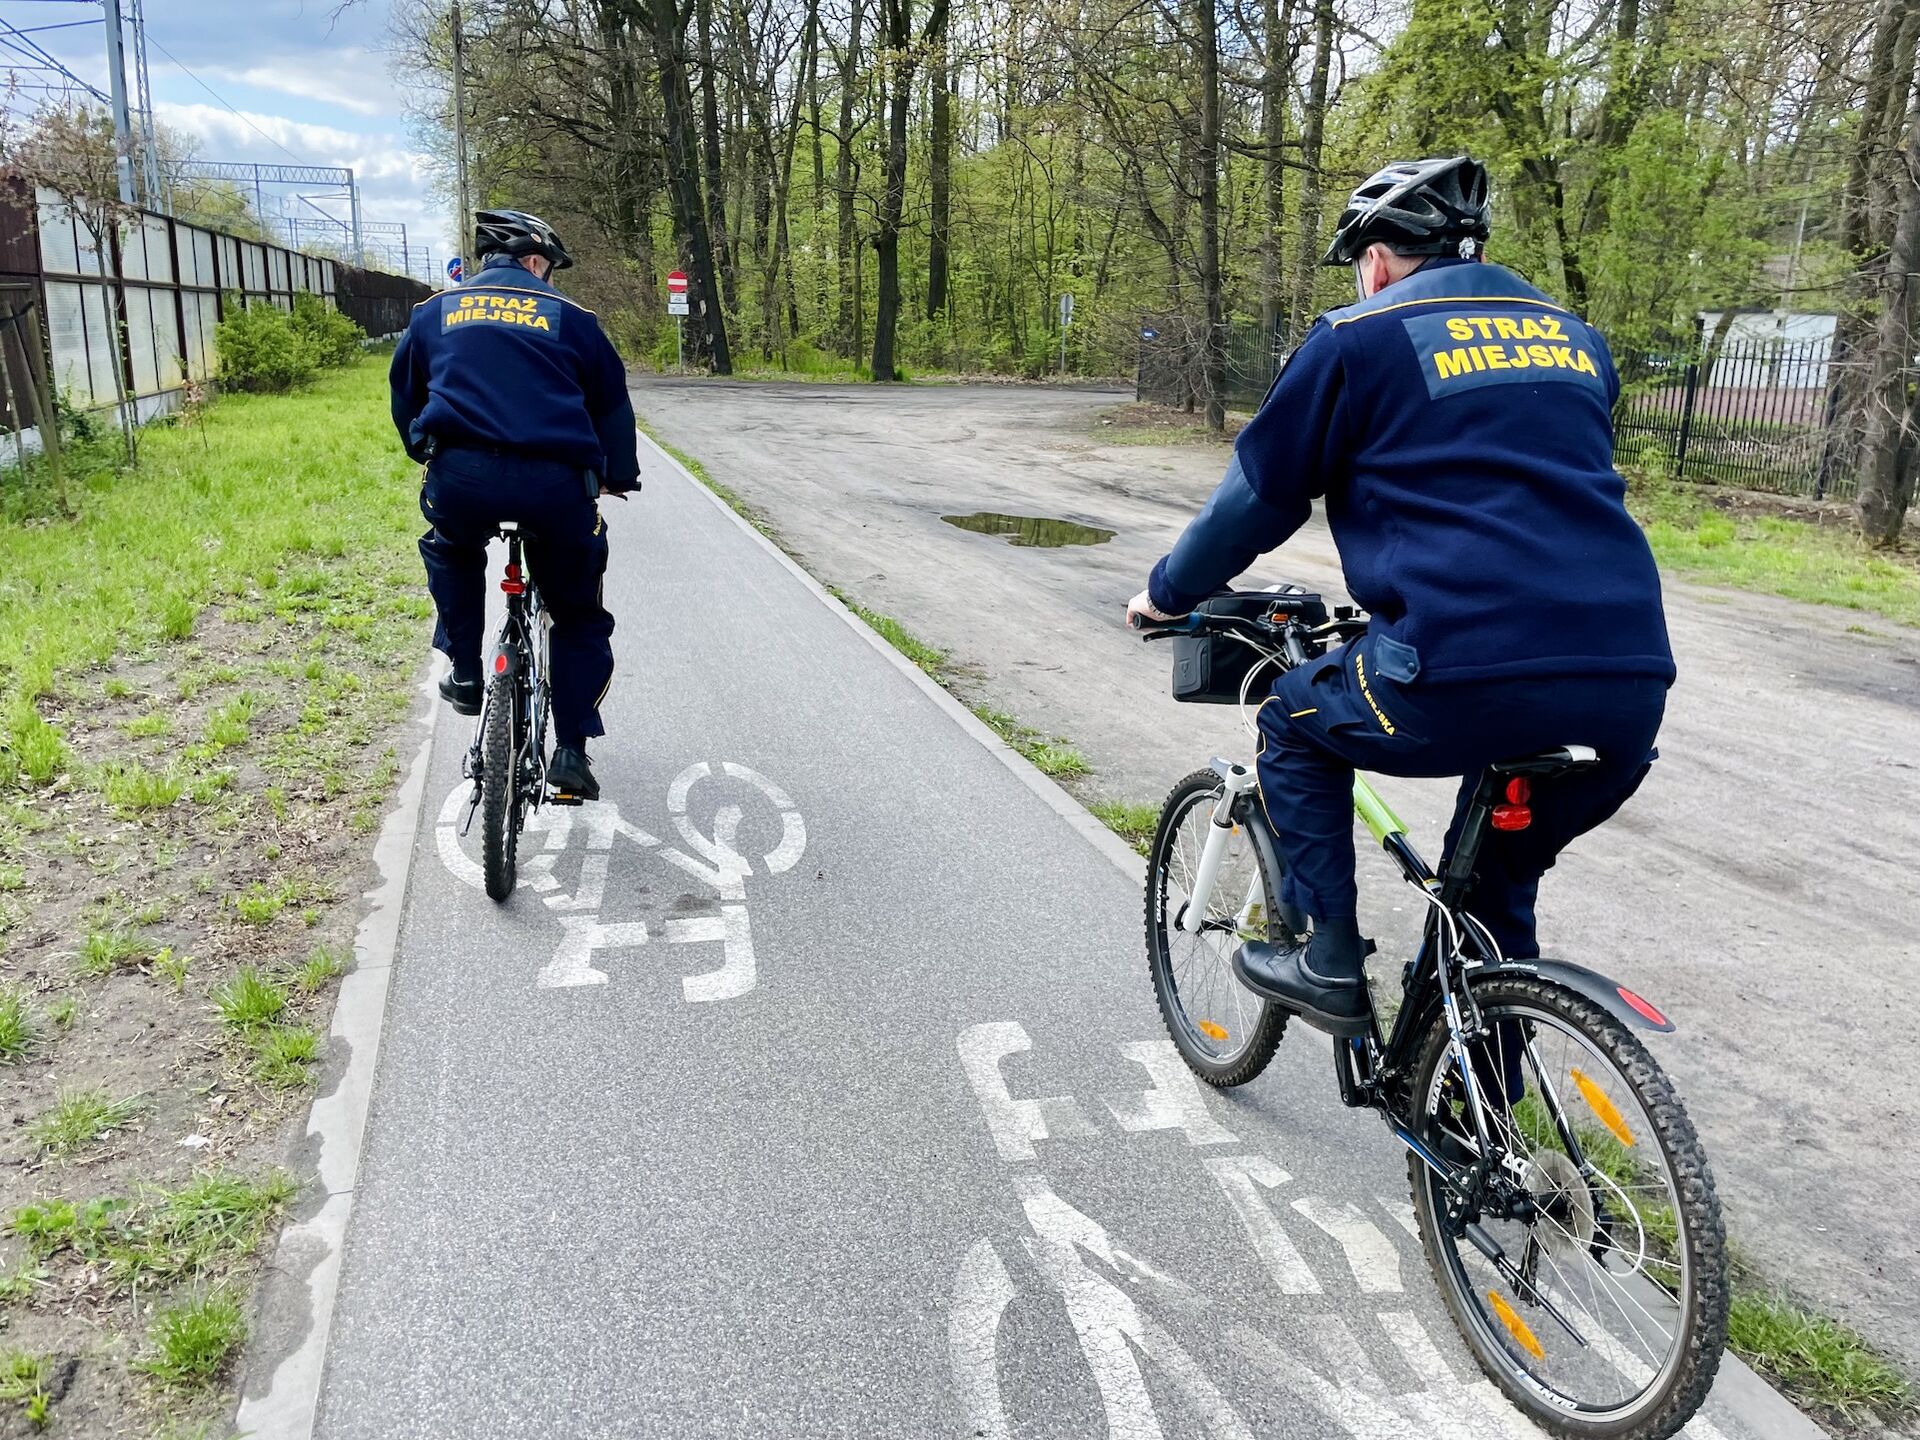 Patrole rowerowe wyjechały na ulice Milanówka